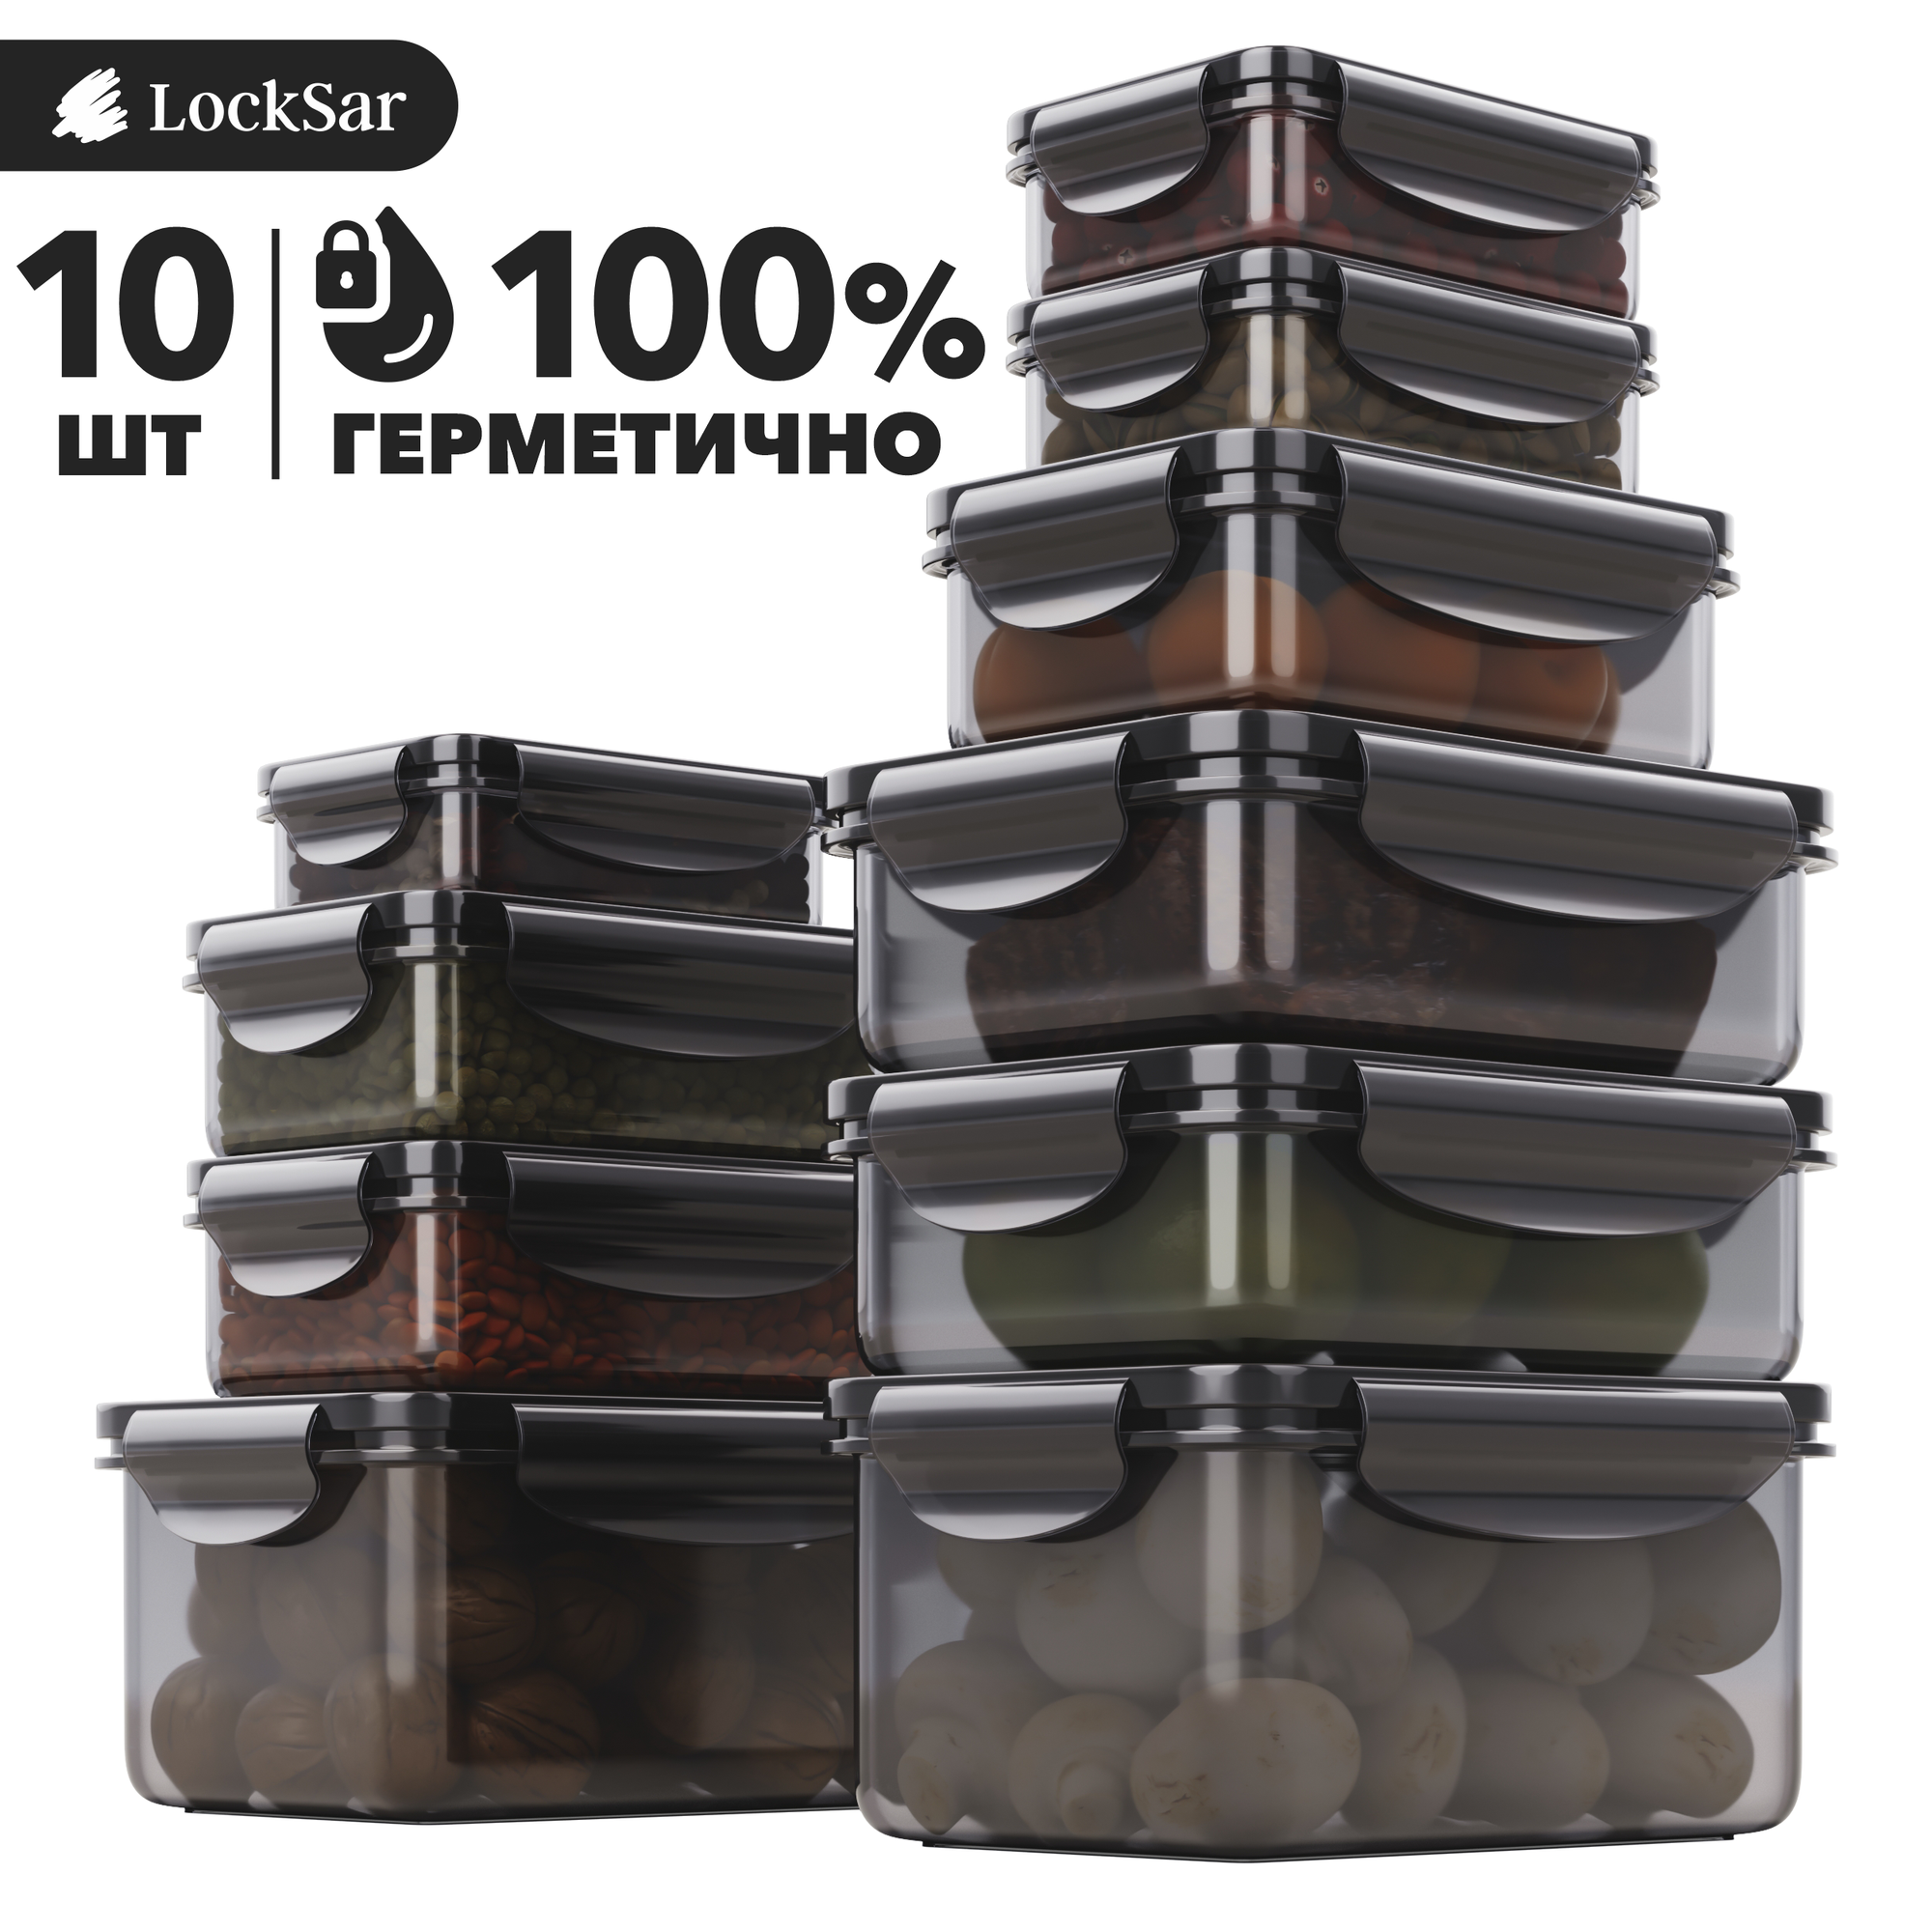 Контейнер для еды герметичный 10 шт LockSar набор контейнеров для хранения продуктов 0,24 л - 3 шт; 0,5 л - 3 шт; 1 л - 2 шт; 1,5 л - 2 шт цвет дымчатый